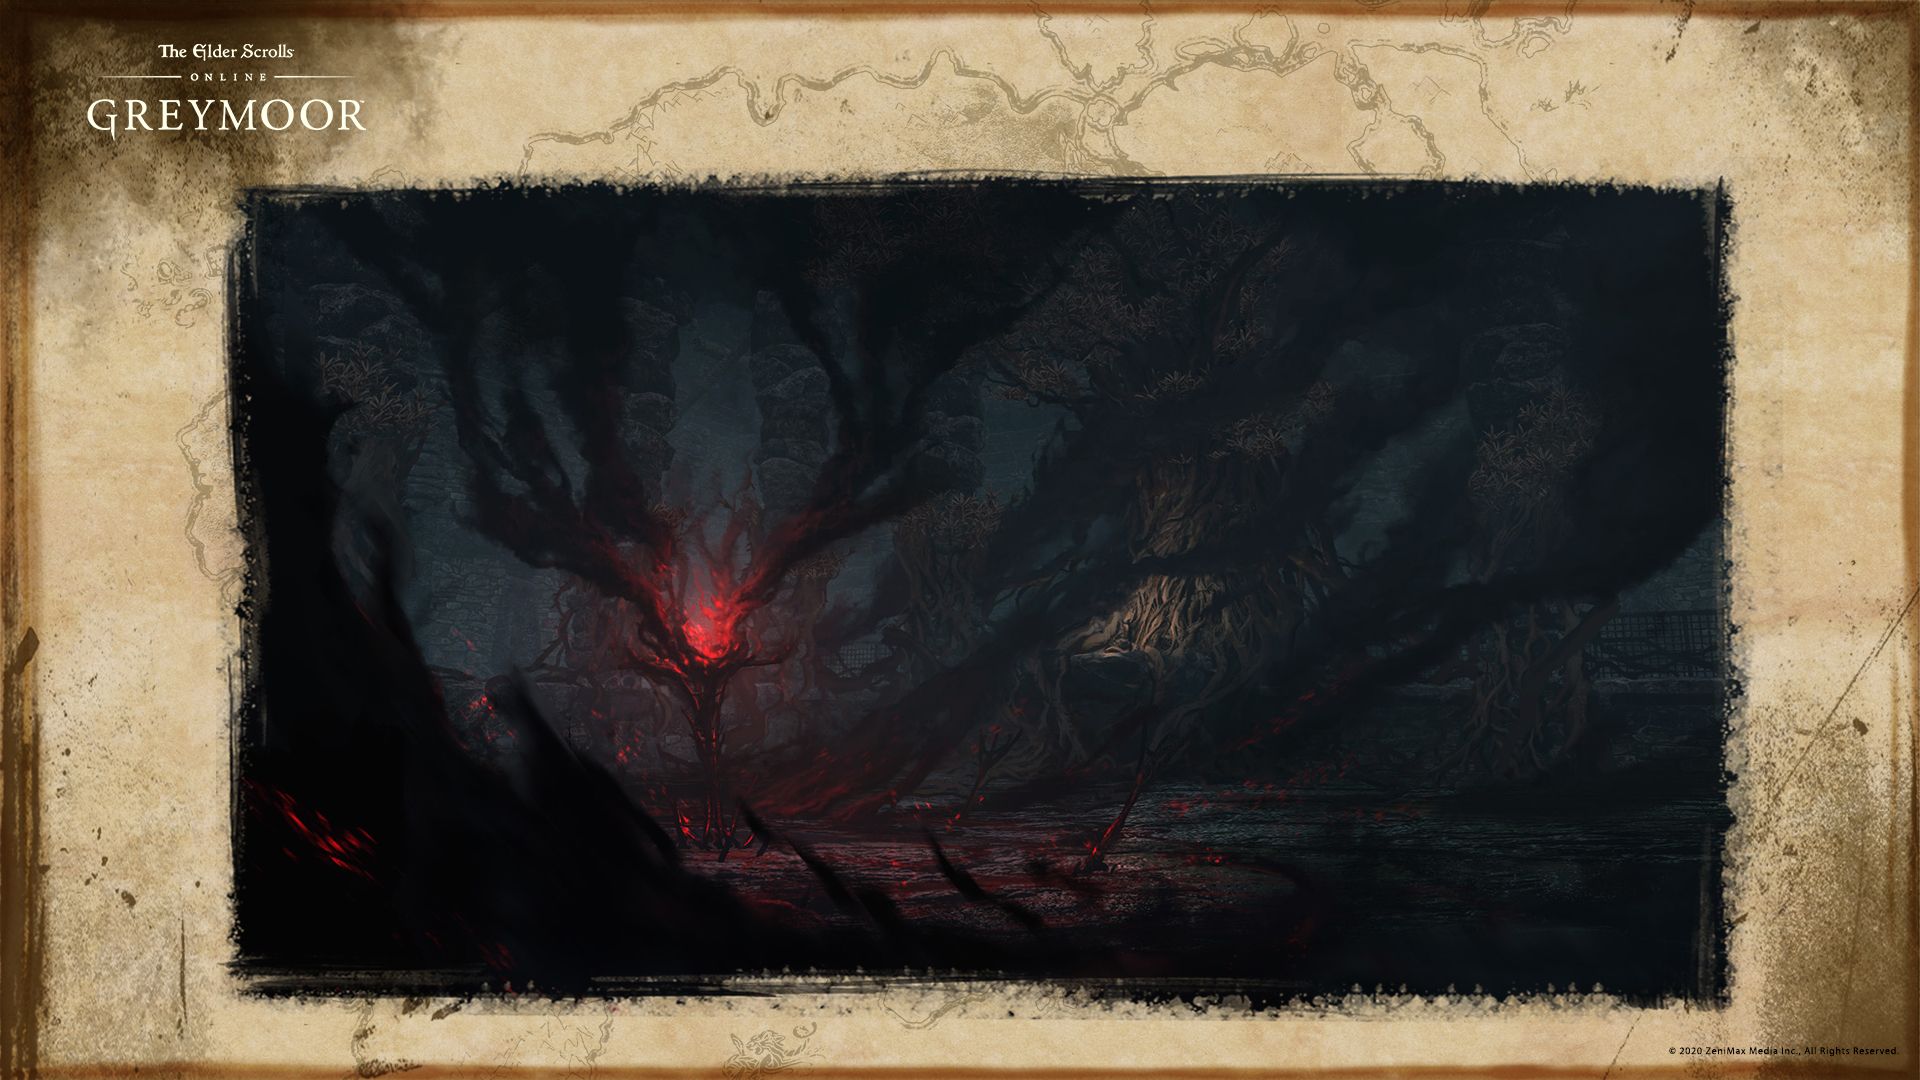 The Elder Scrolls Online Greymoor Concept Art Netheroot Interior Biome